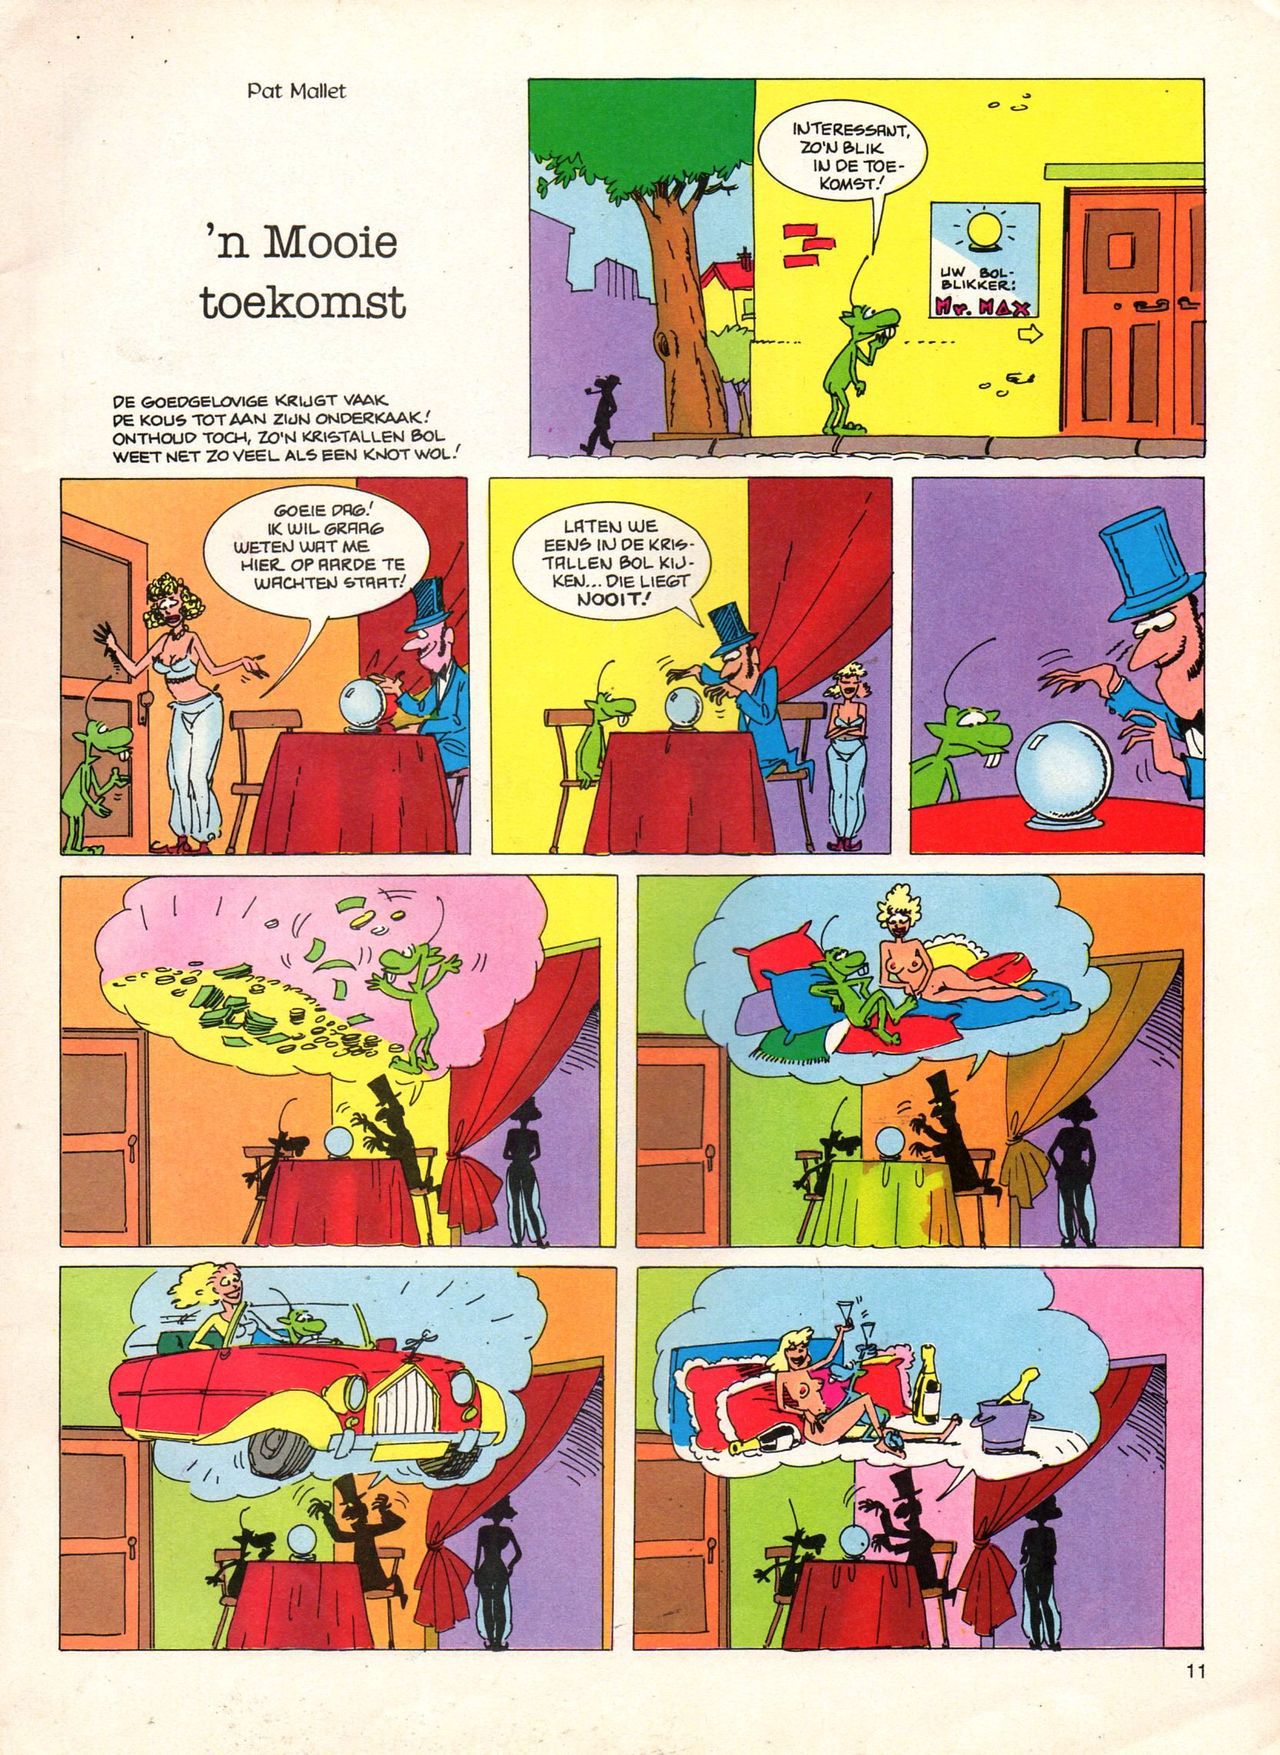 Het Is Groen En Het.. - 04 - Mag Ik Die Ballen.. OH, PARDON! (Dutch) Een oude humoristische serie van Pat Mallet 11